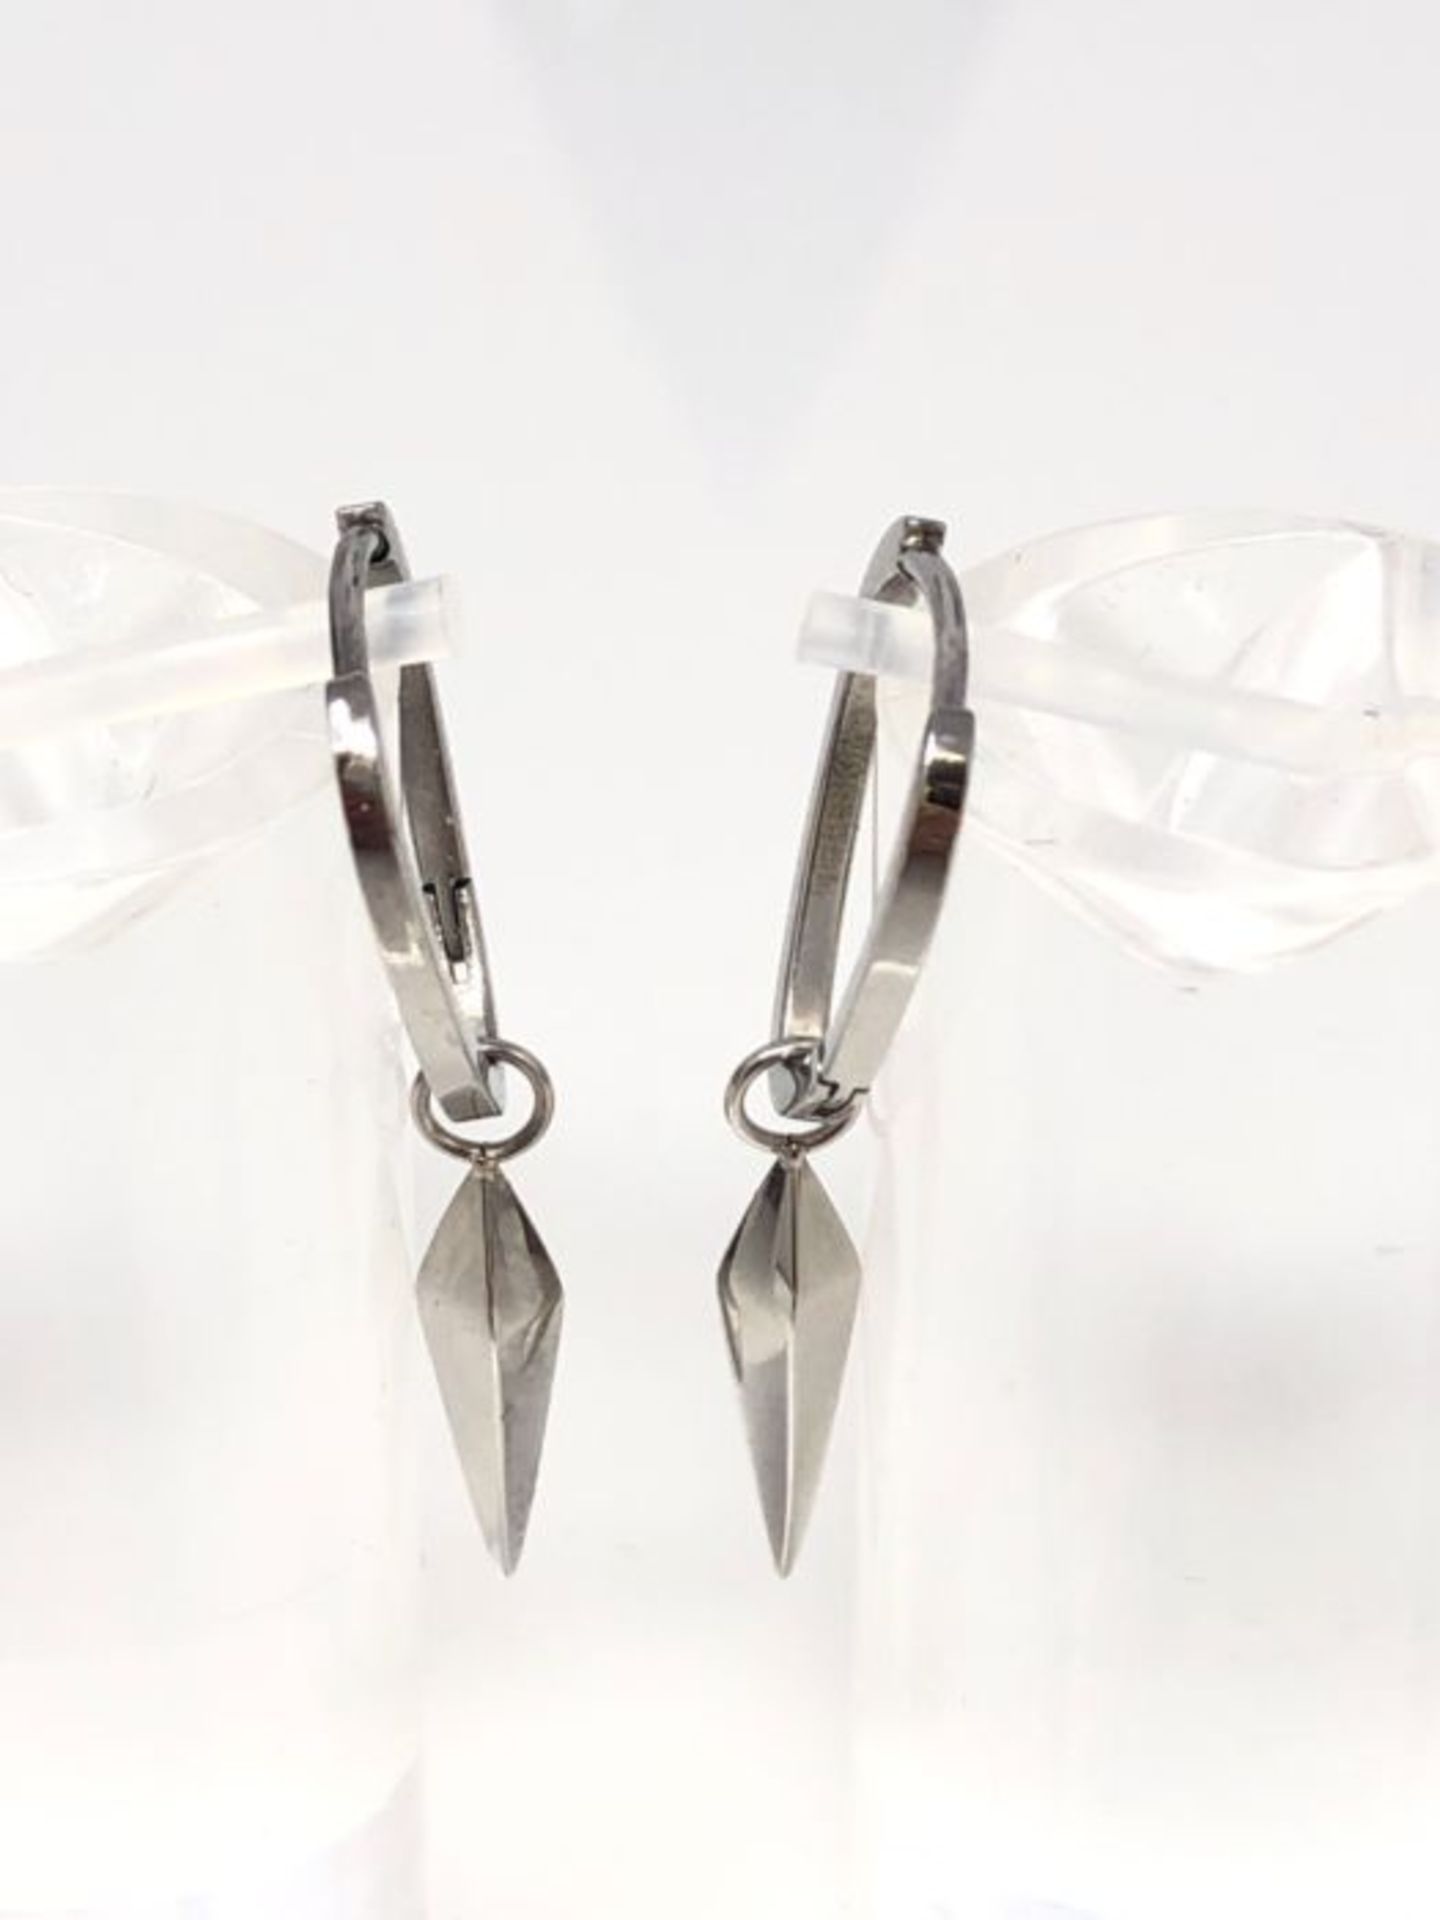 Liebeskind Berlin Creole earrings, 3,6 cm, Stainless Steel, No gemstone., - Image 3 of 3